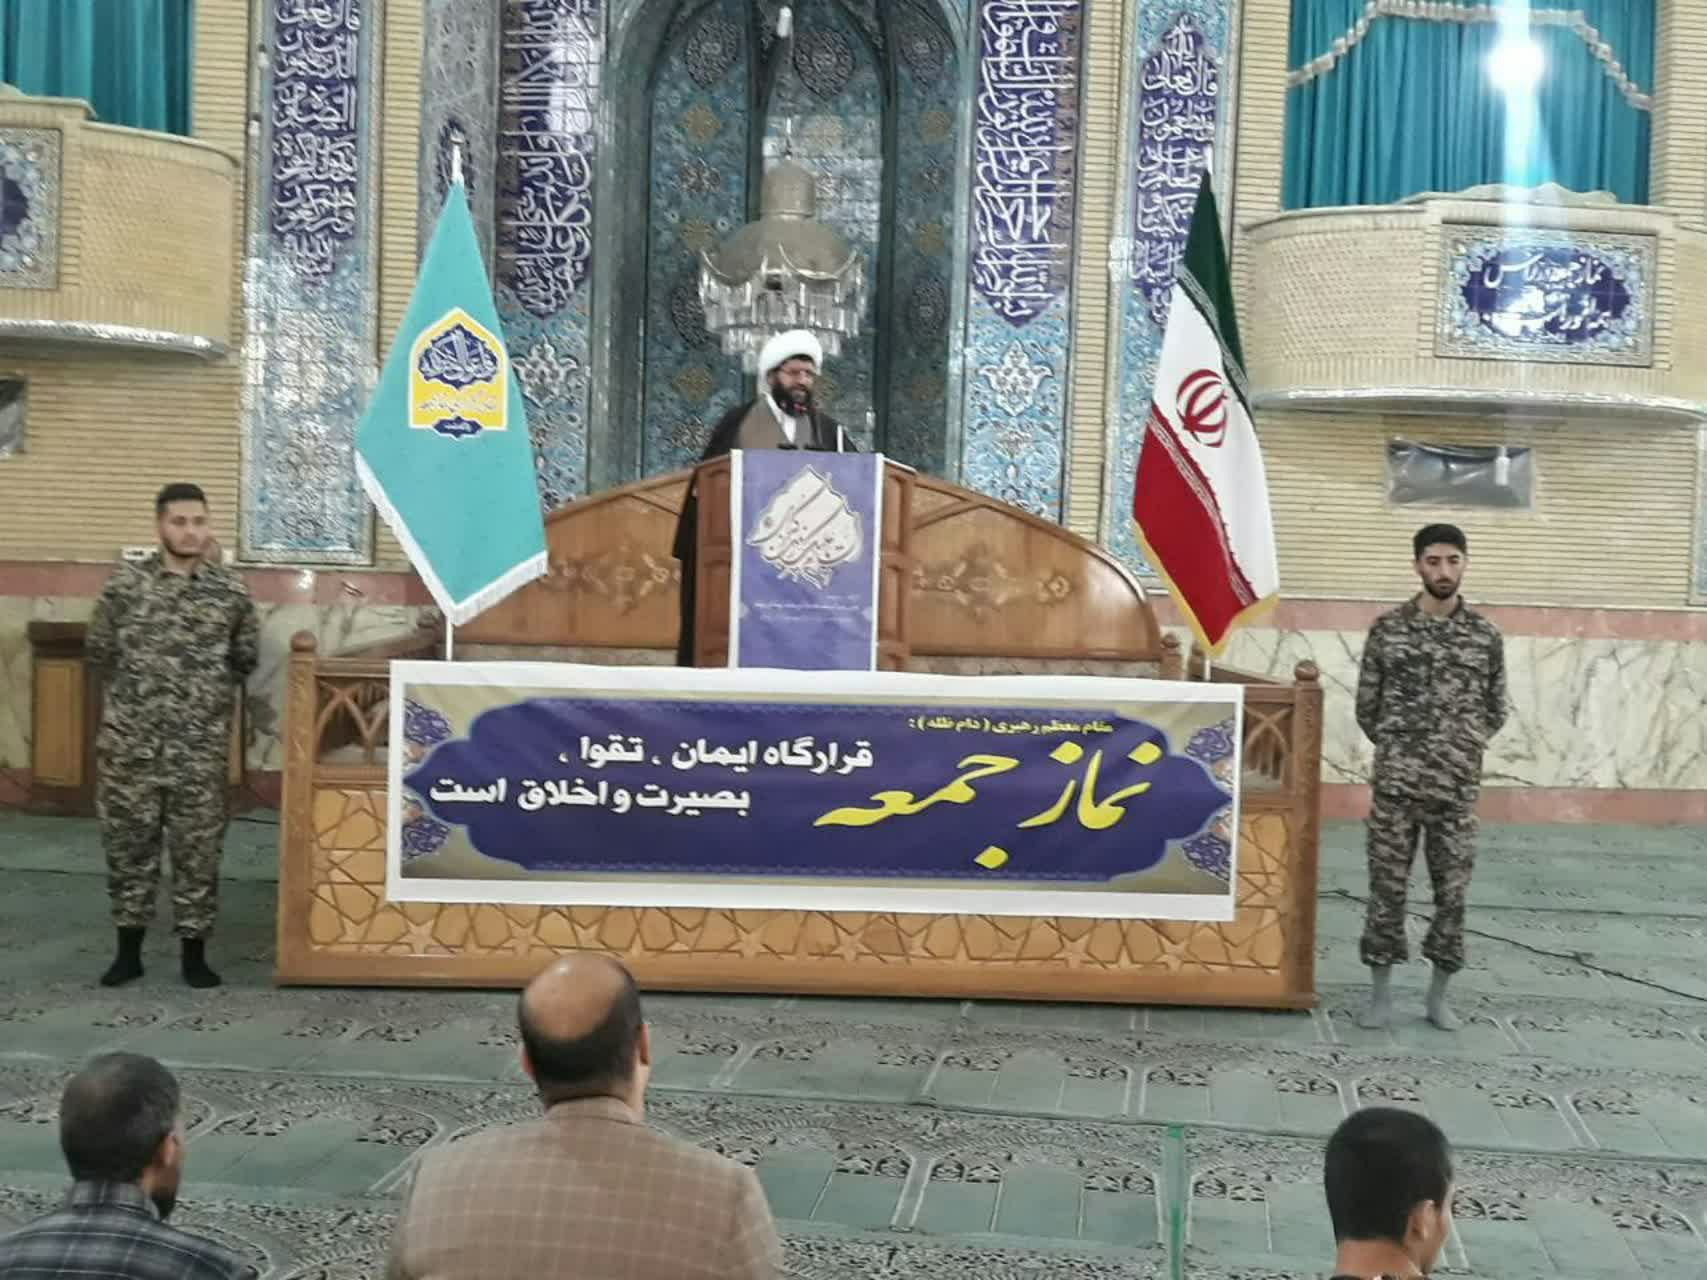 ائمه جماعات استان تهران:طوفان الاقصی دنیا را علیه صهیونیستها بسیج کرد